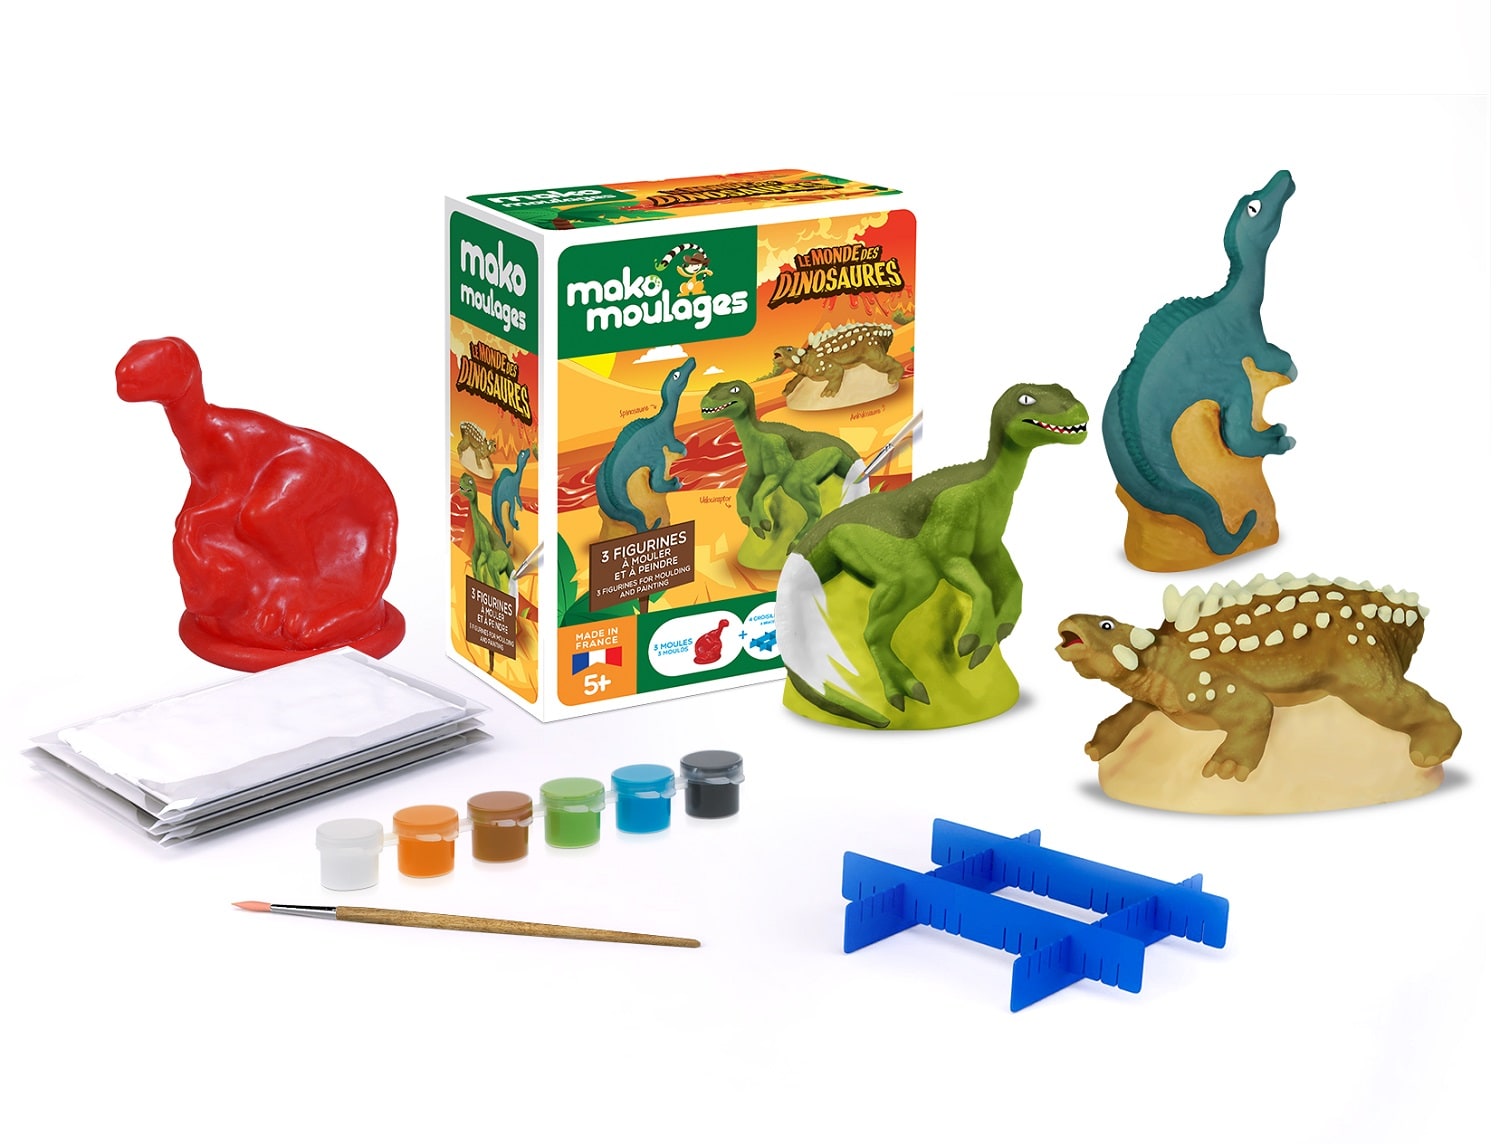 12 Dinosaure pâte à Modeler Moule pour Enfants de 3 4 à 5 Ans